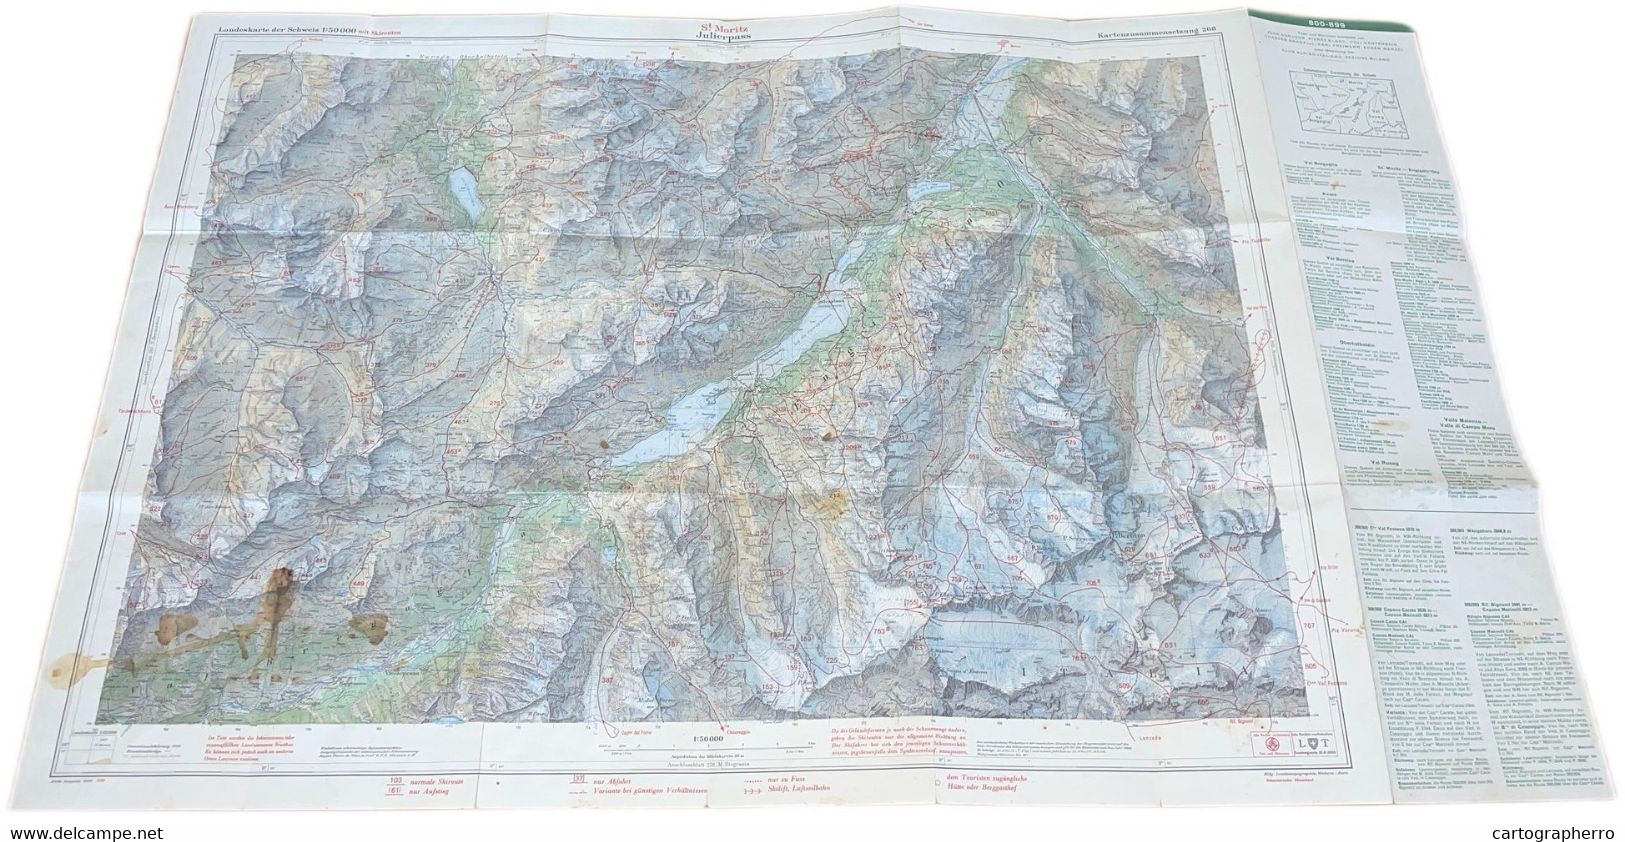 Topographical Map Switzerland 1959 St. Moritz Julierpass Scale 1:50.000 Carte Avec Itineraires De Ski Feuille 268 - Cartes Topographiques